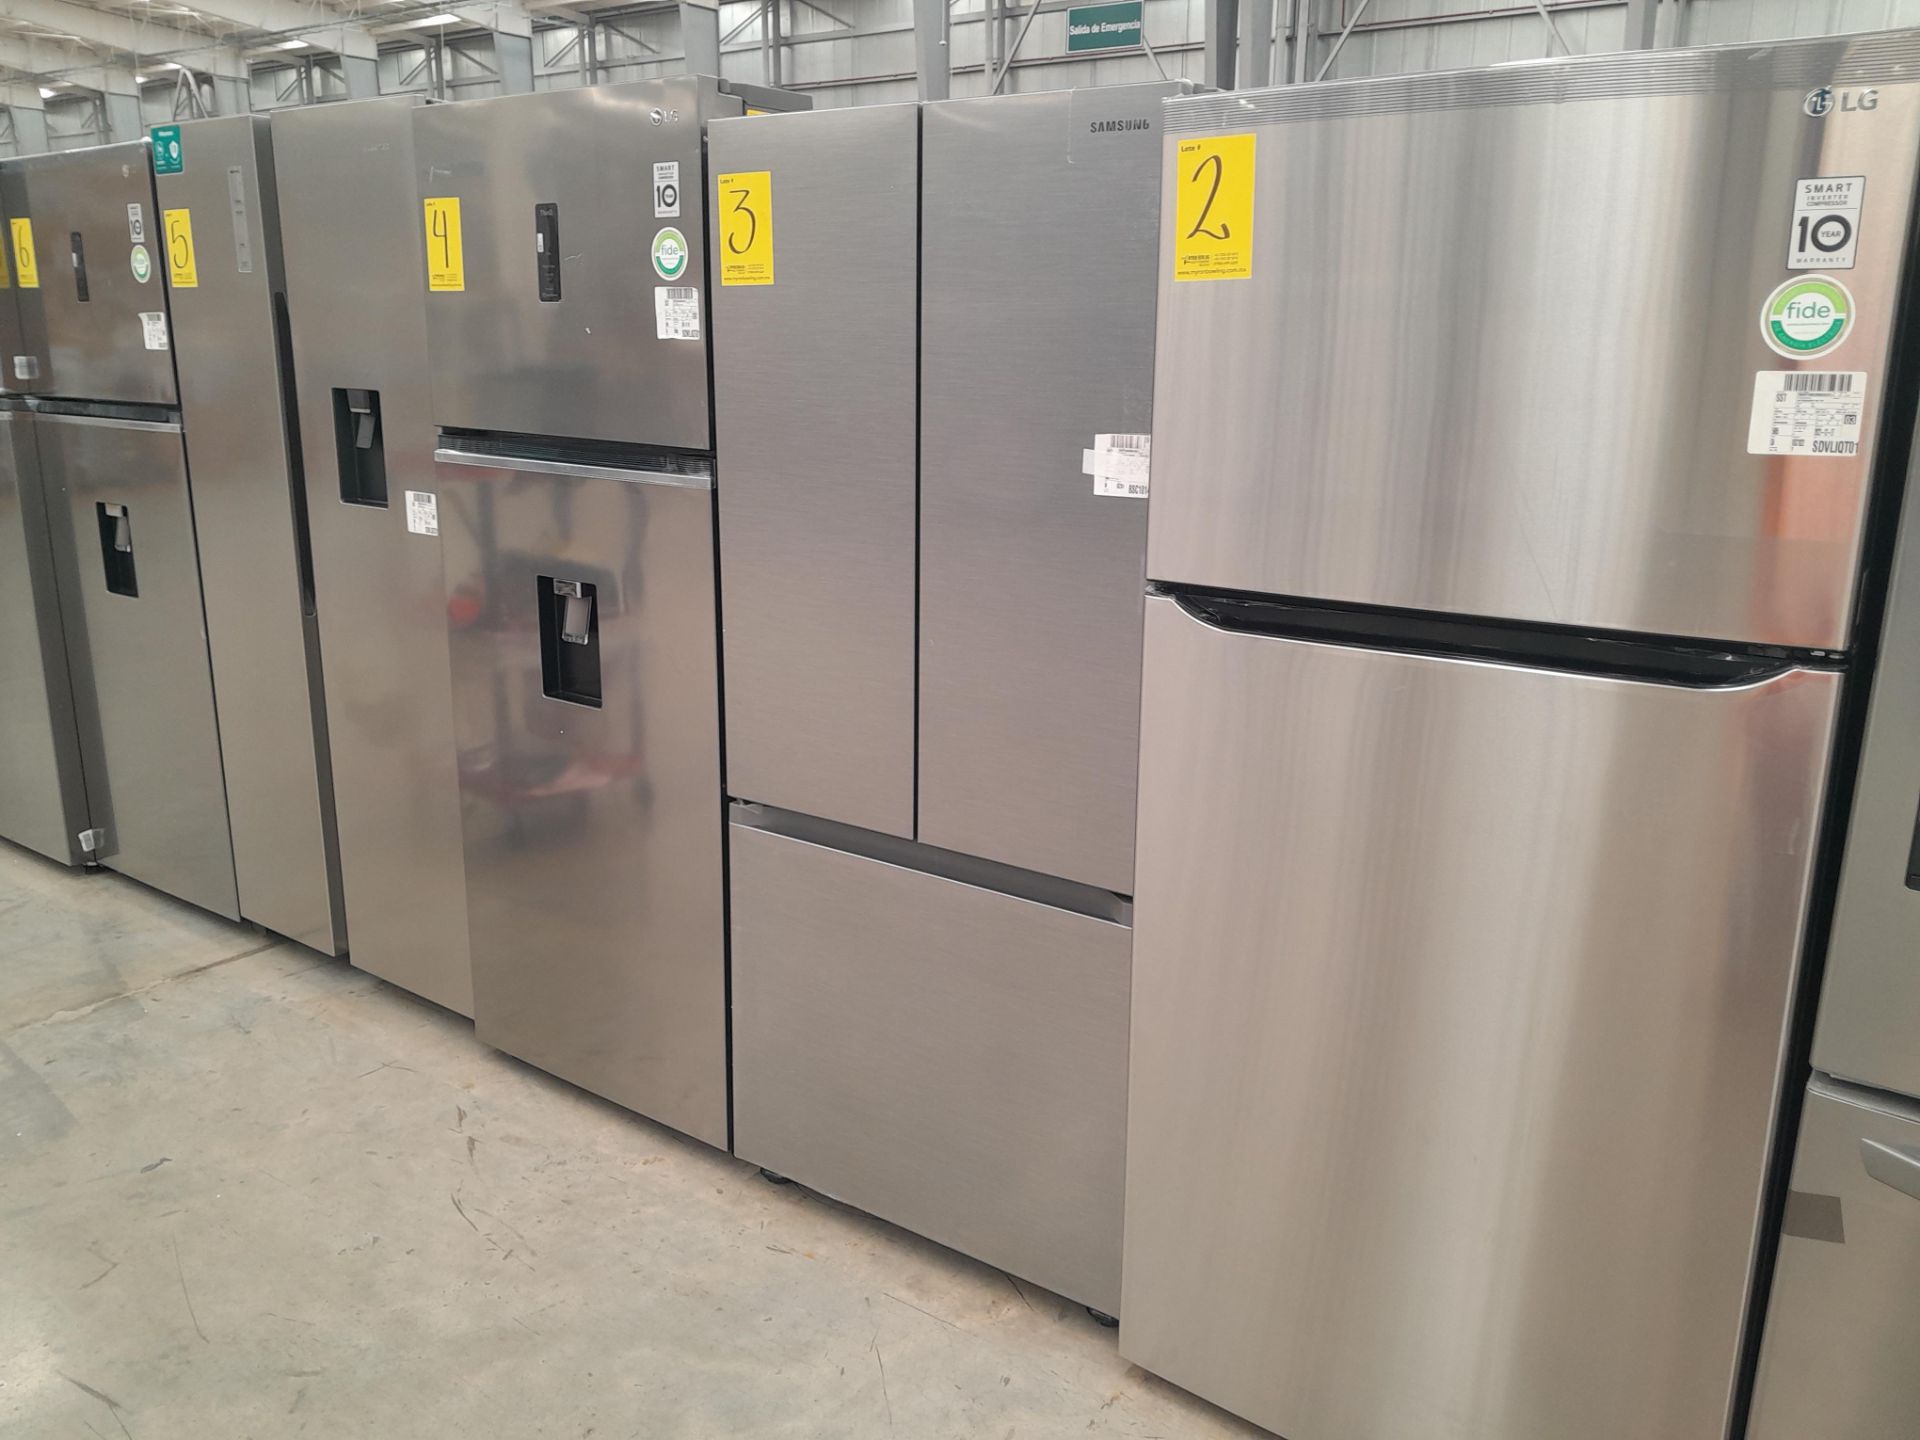 (NUEVO) Lote de 1 Refrigerador Marca SAMSUNG, Modelo RF22A4010S9, Serie 02400N, Color GRIS - Image 3 of 5